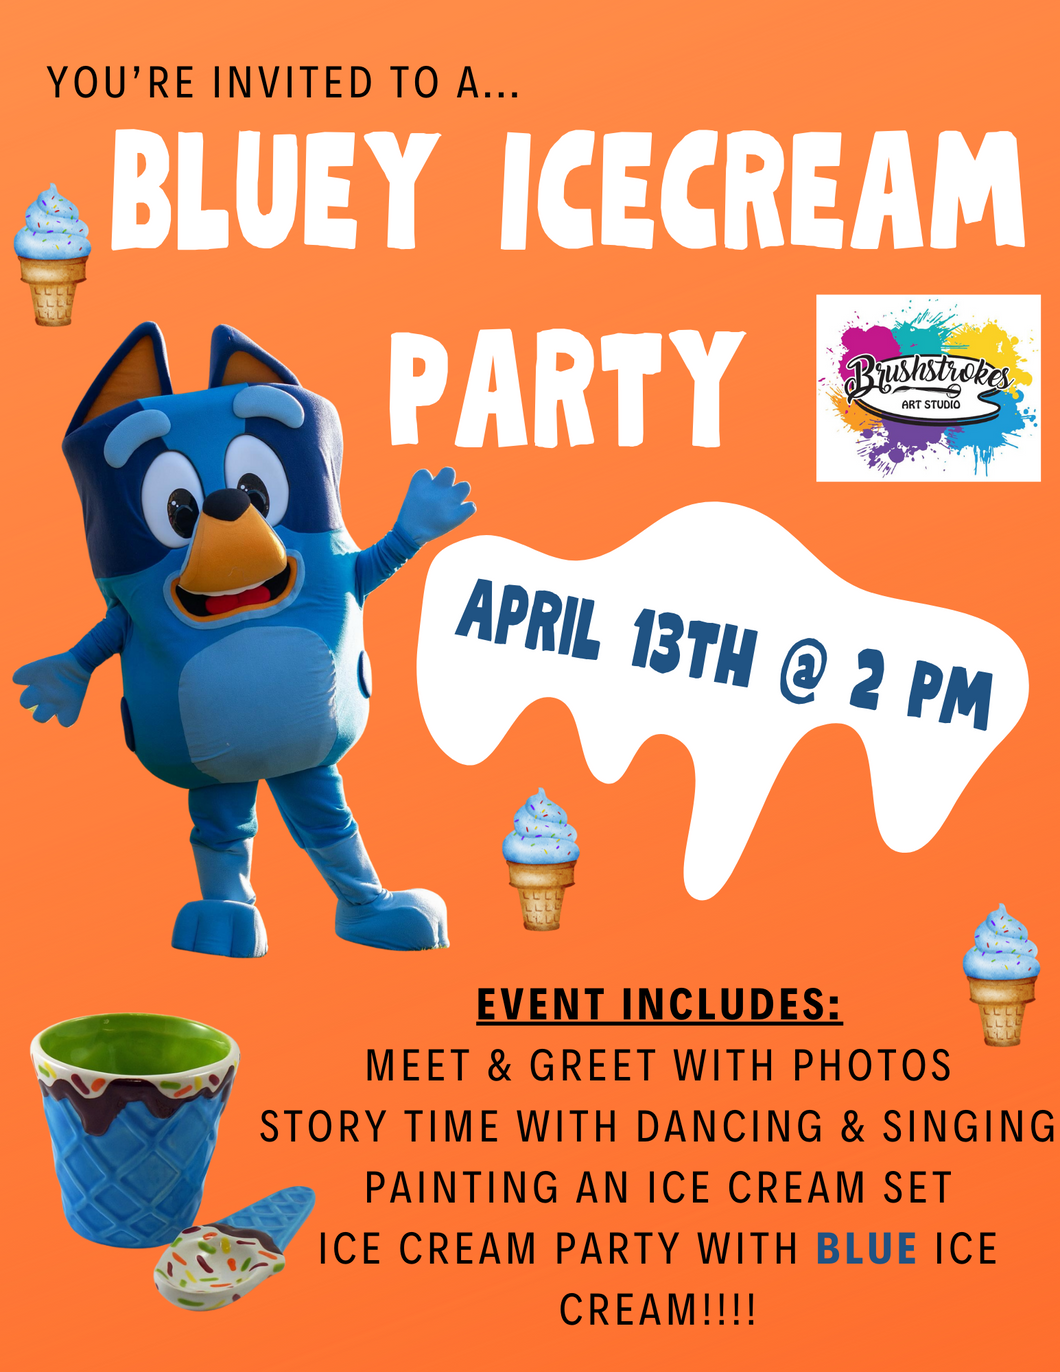 Bluey Ice Cream Party!!!